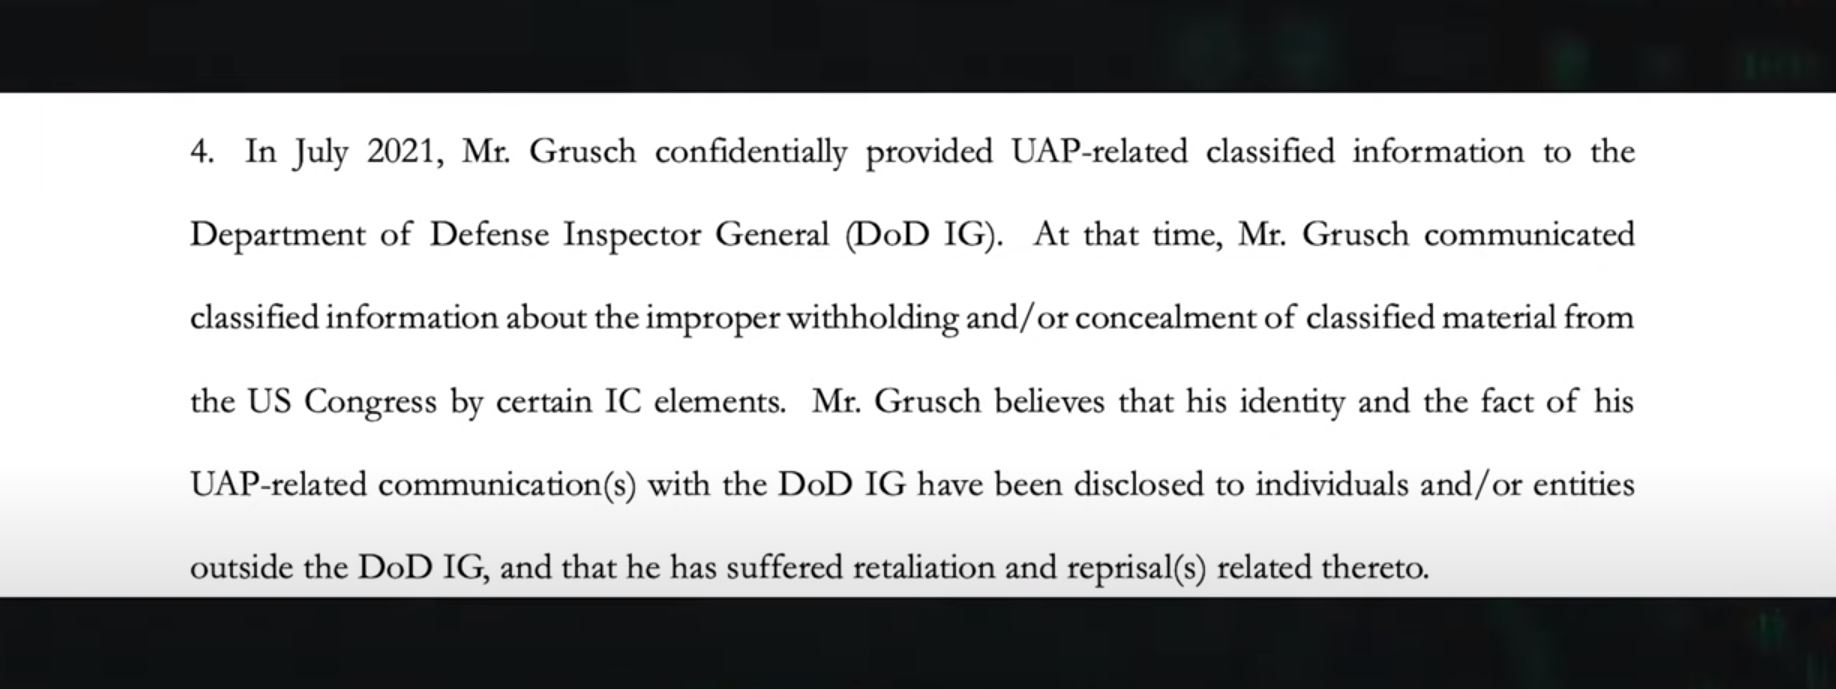 Um documento oficial confirma que, em 2021, Grusch relatou o caso ao Departamento de Defesa dos Estados Unidos.